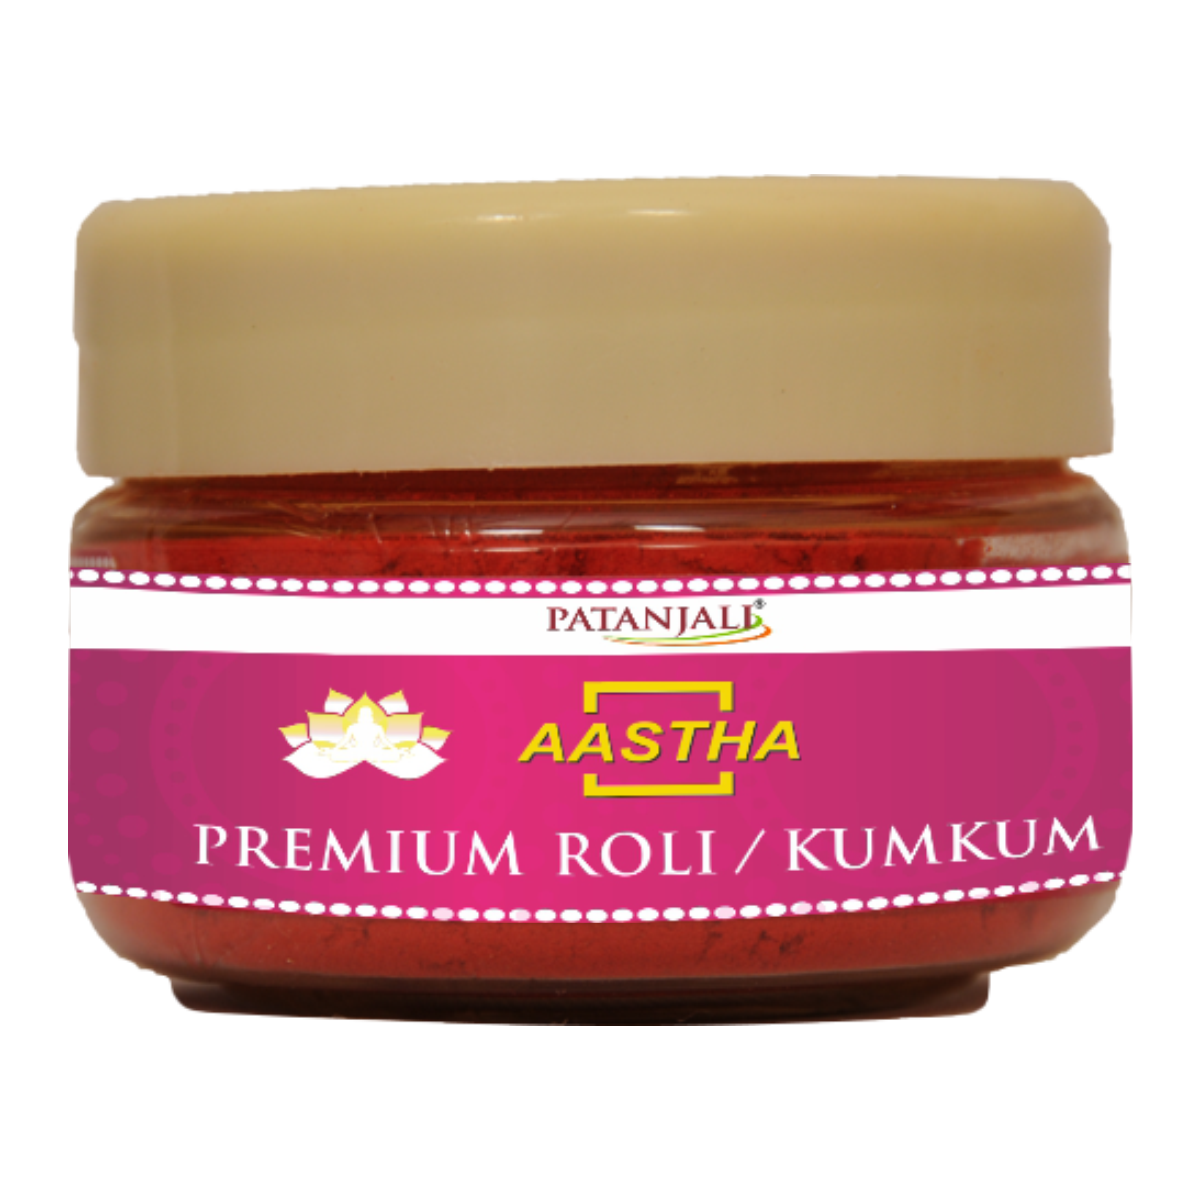 Aastha Premium Roli / Kumkum